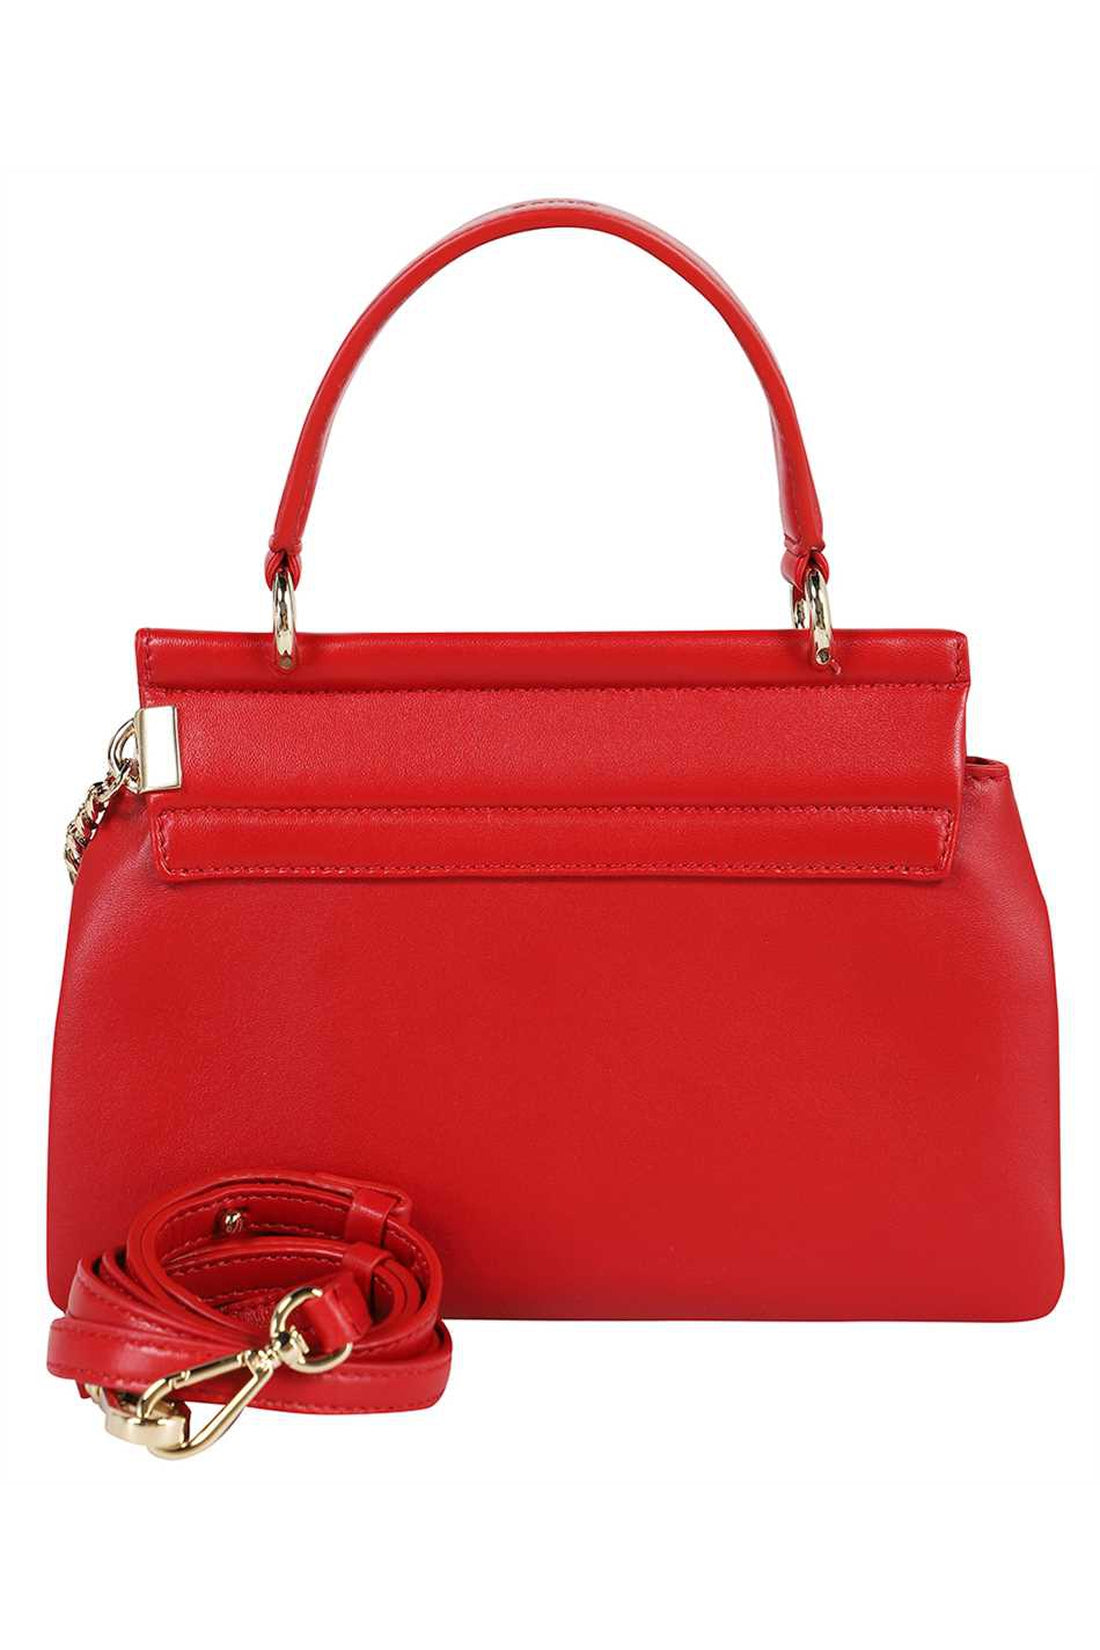 Chloé-OUTLET-SALE-Leather handbag-ARCHIVIST